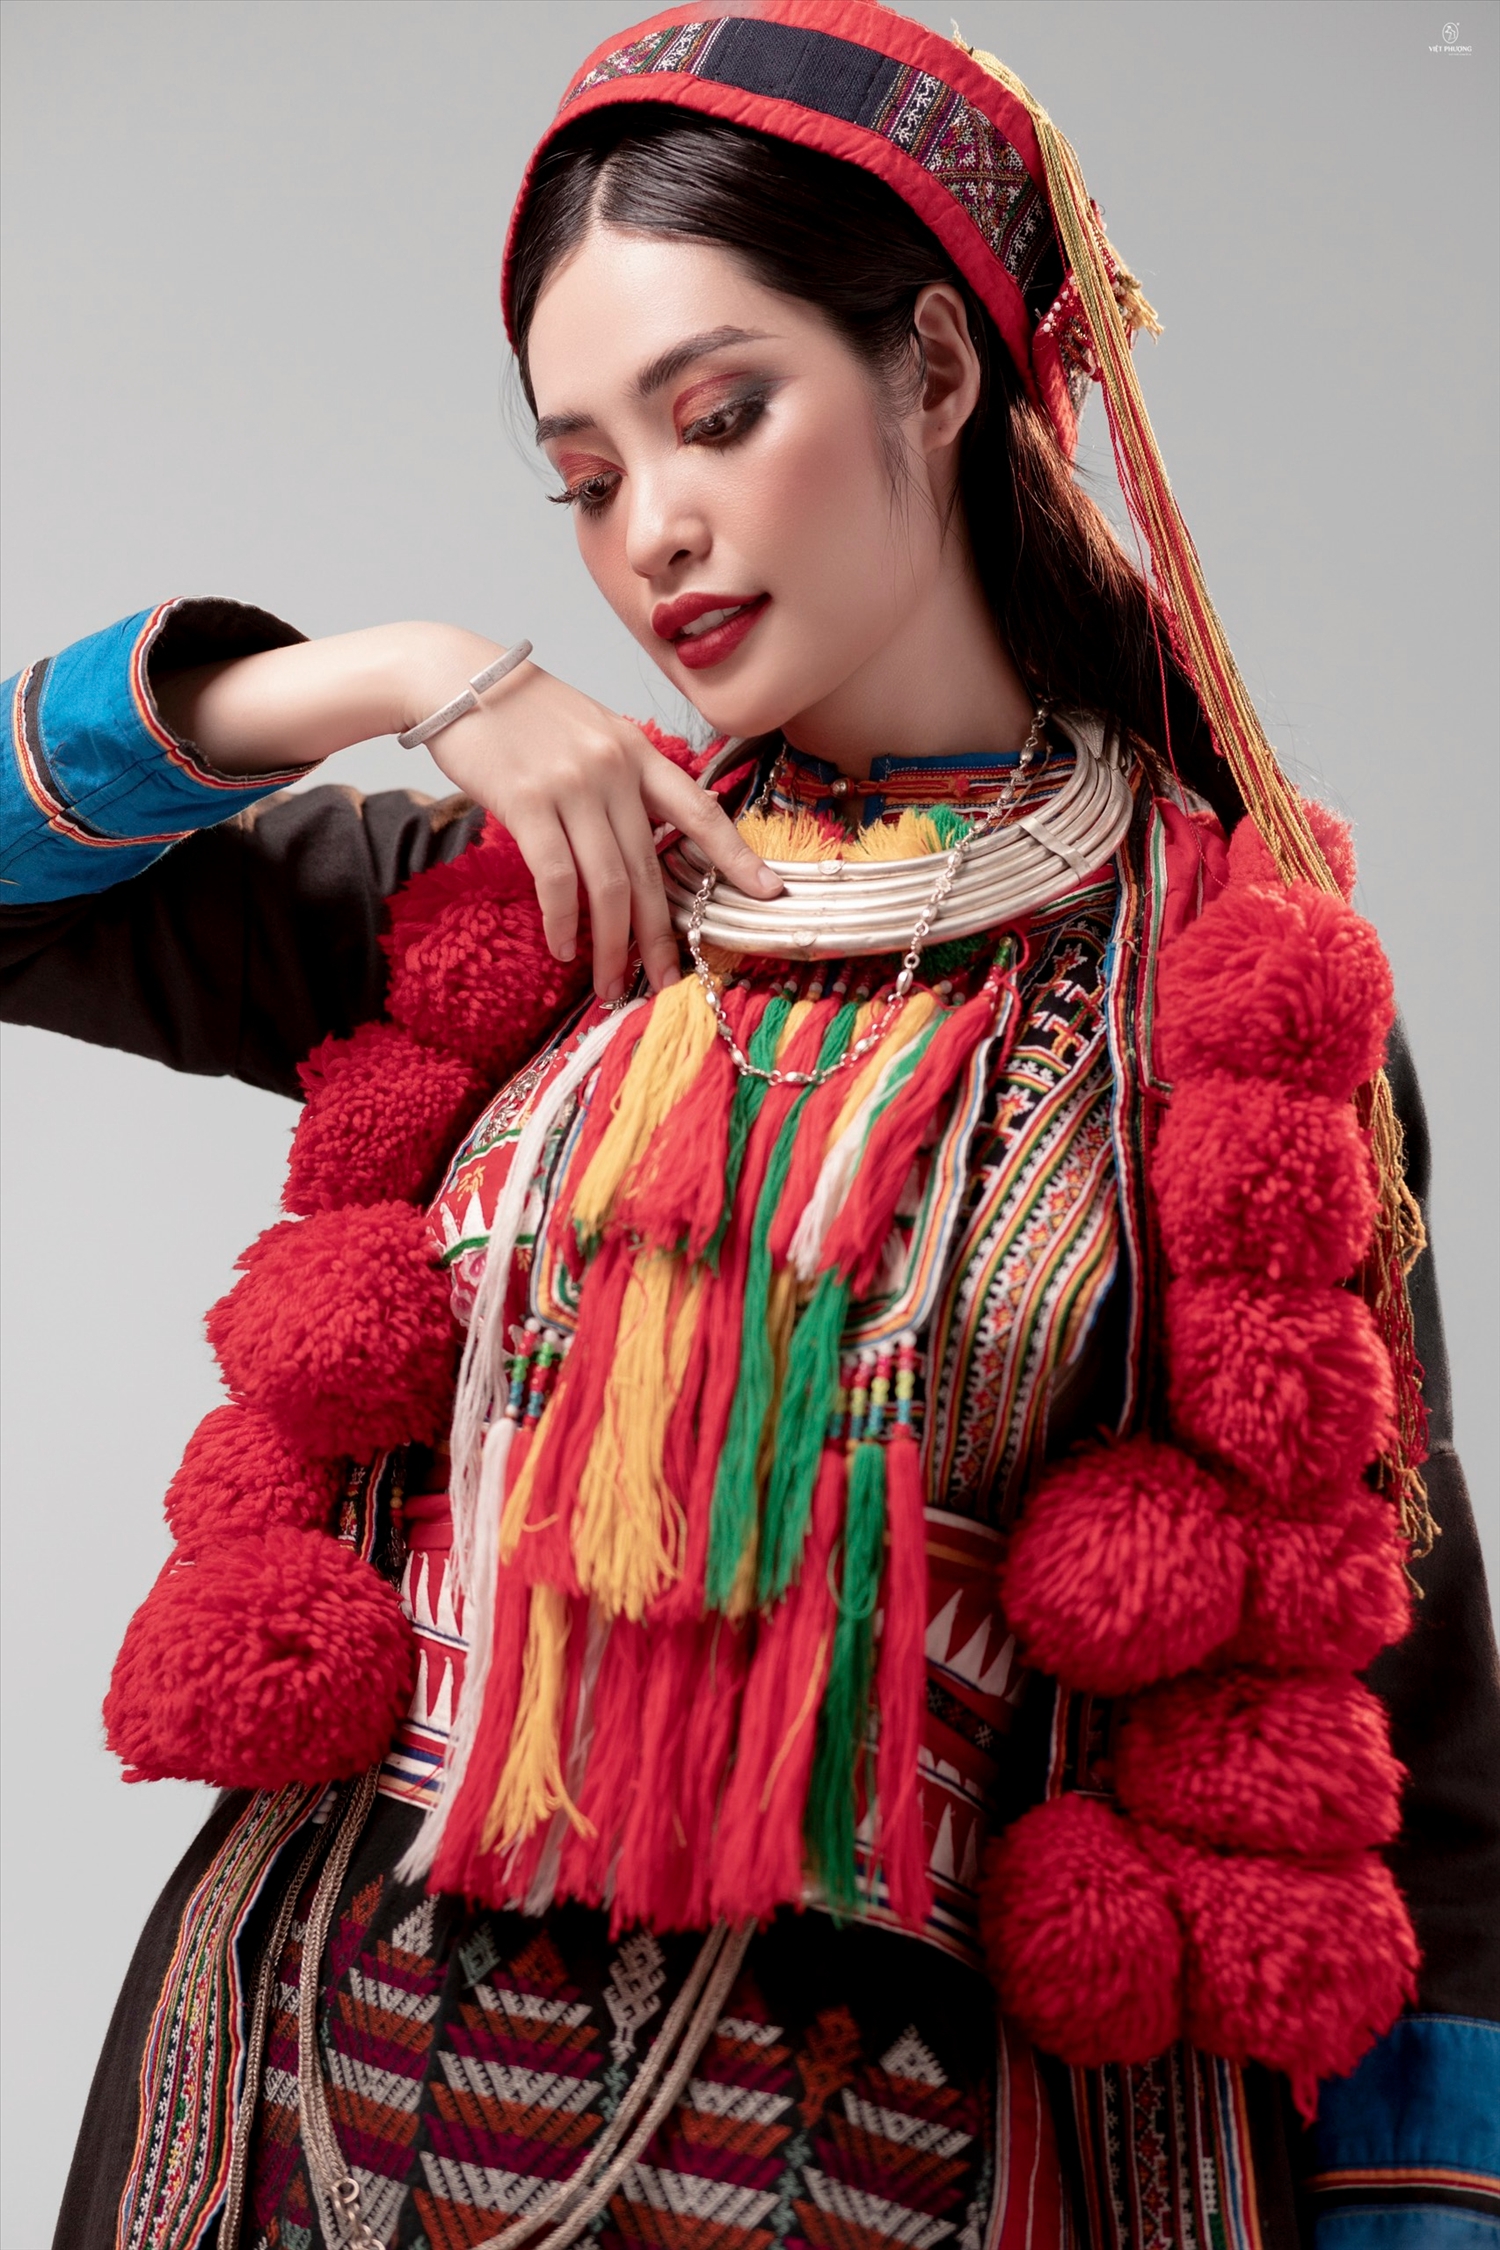 Hoa hậu Nông Thúy hằng trong trang phục truyền thống của dân tộc Dao đỏ